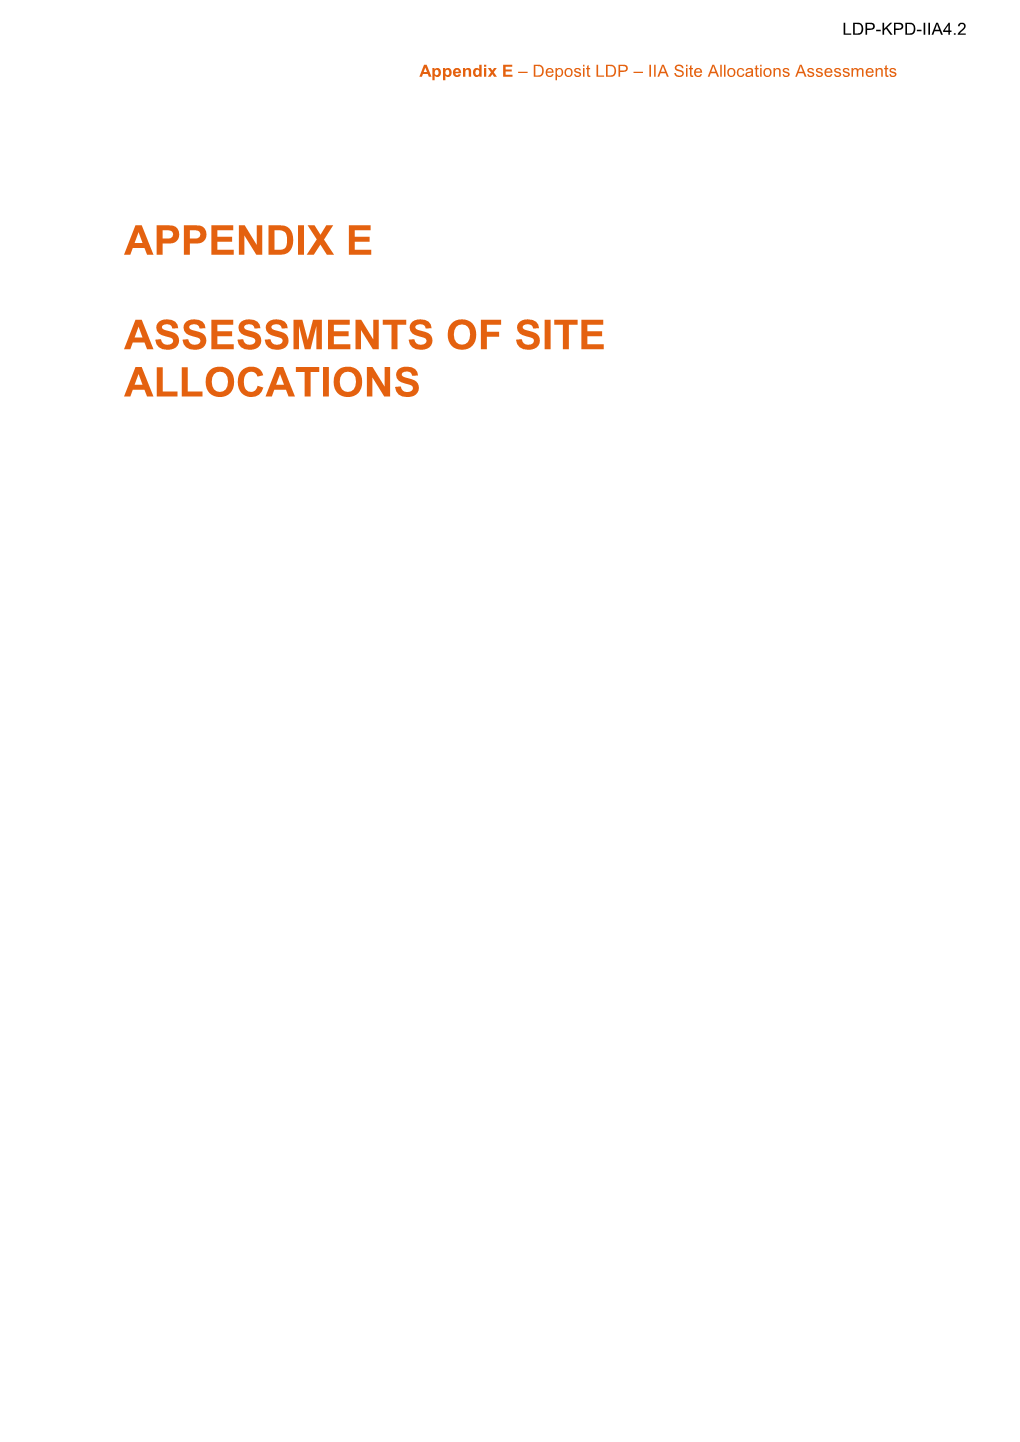 LDP-KPD-IIA4.2 Deposit IIA Appendix E